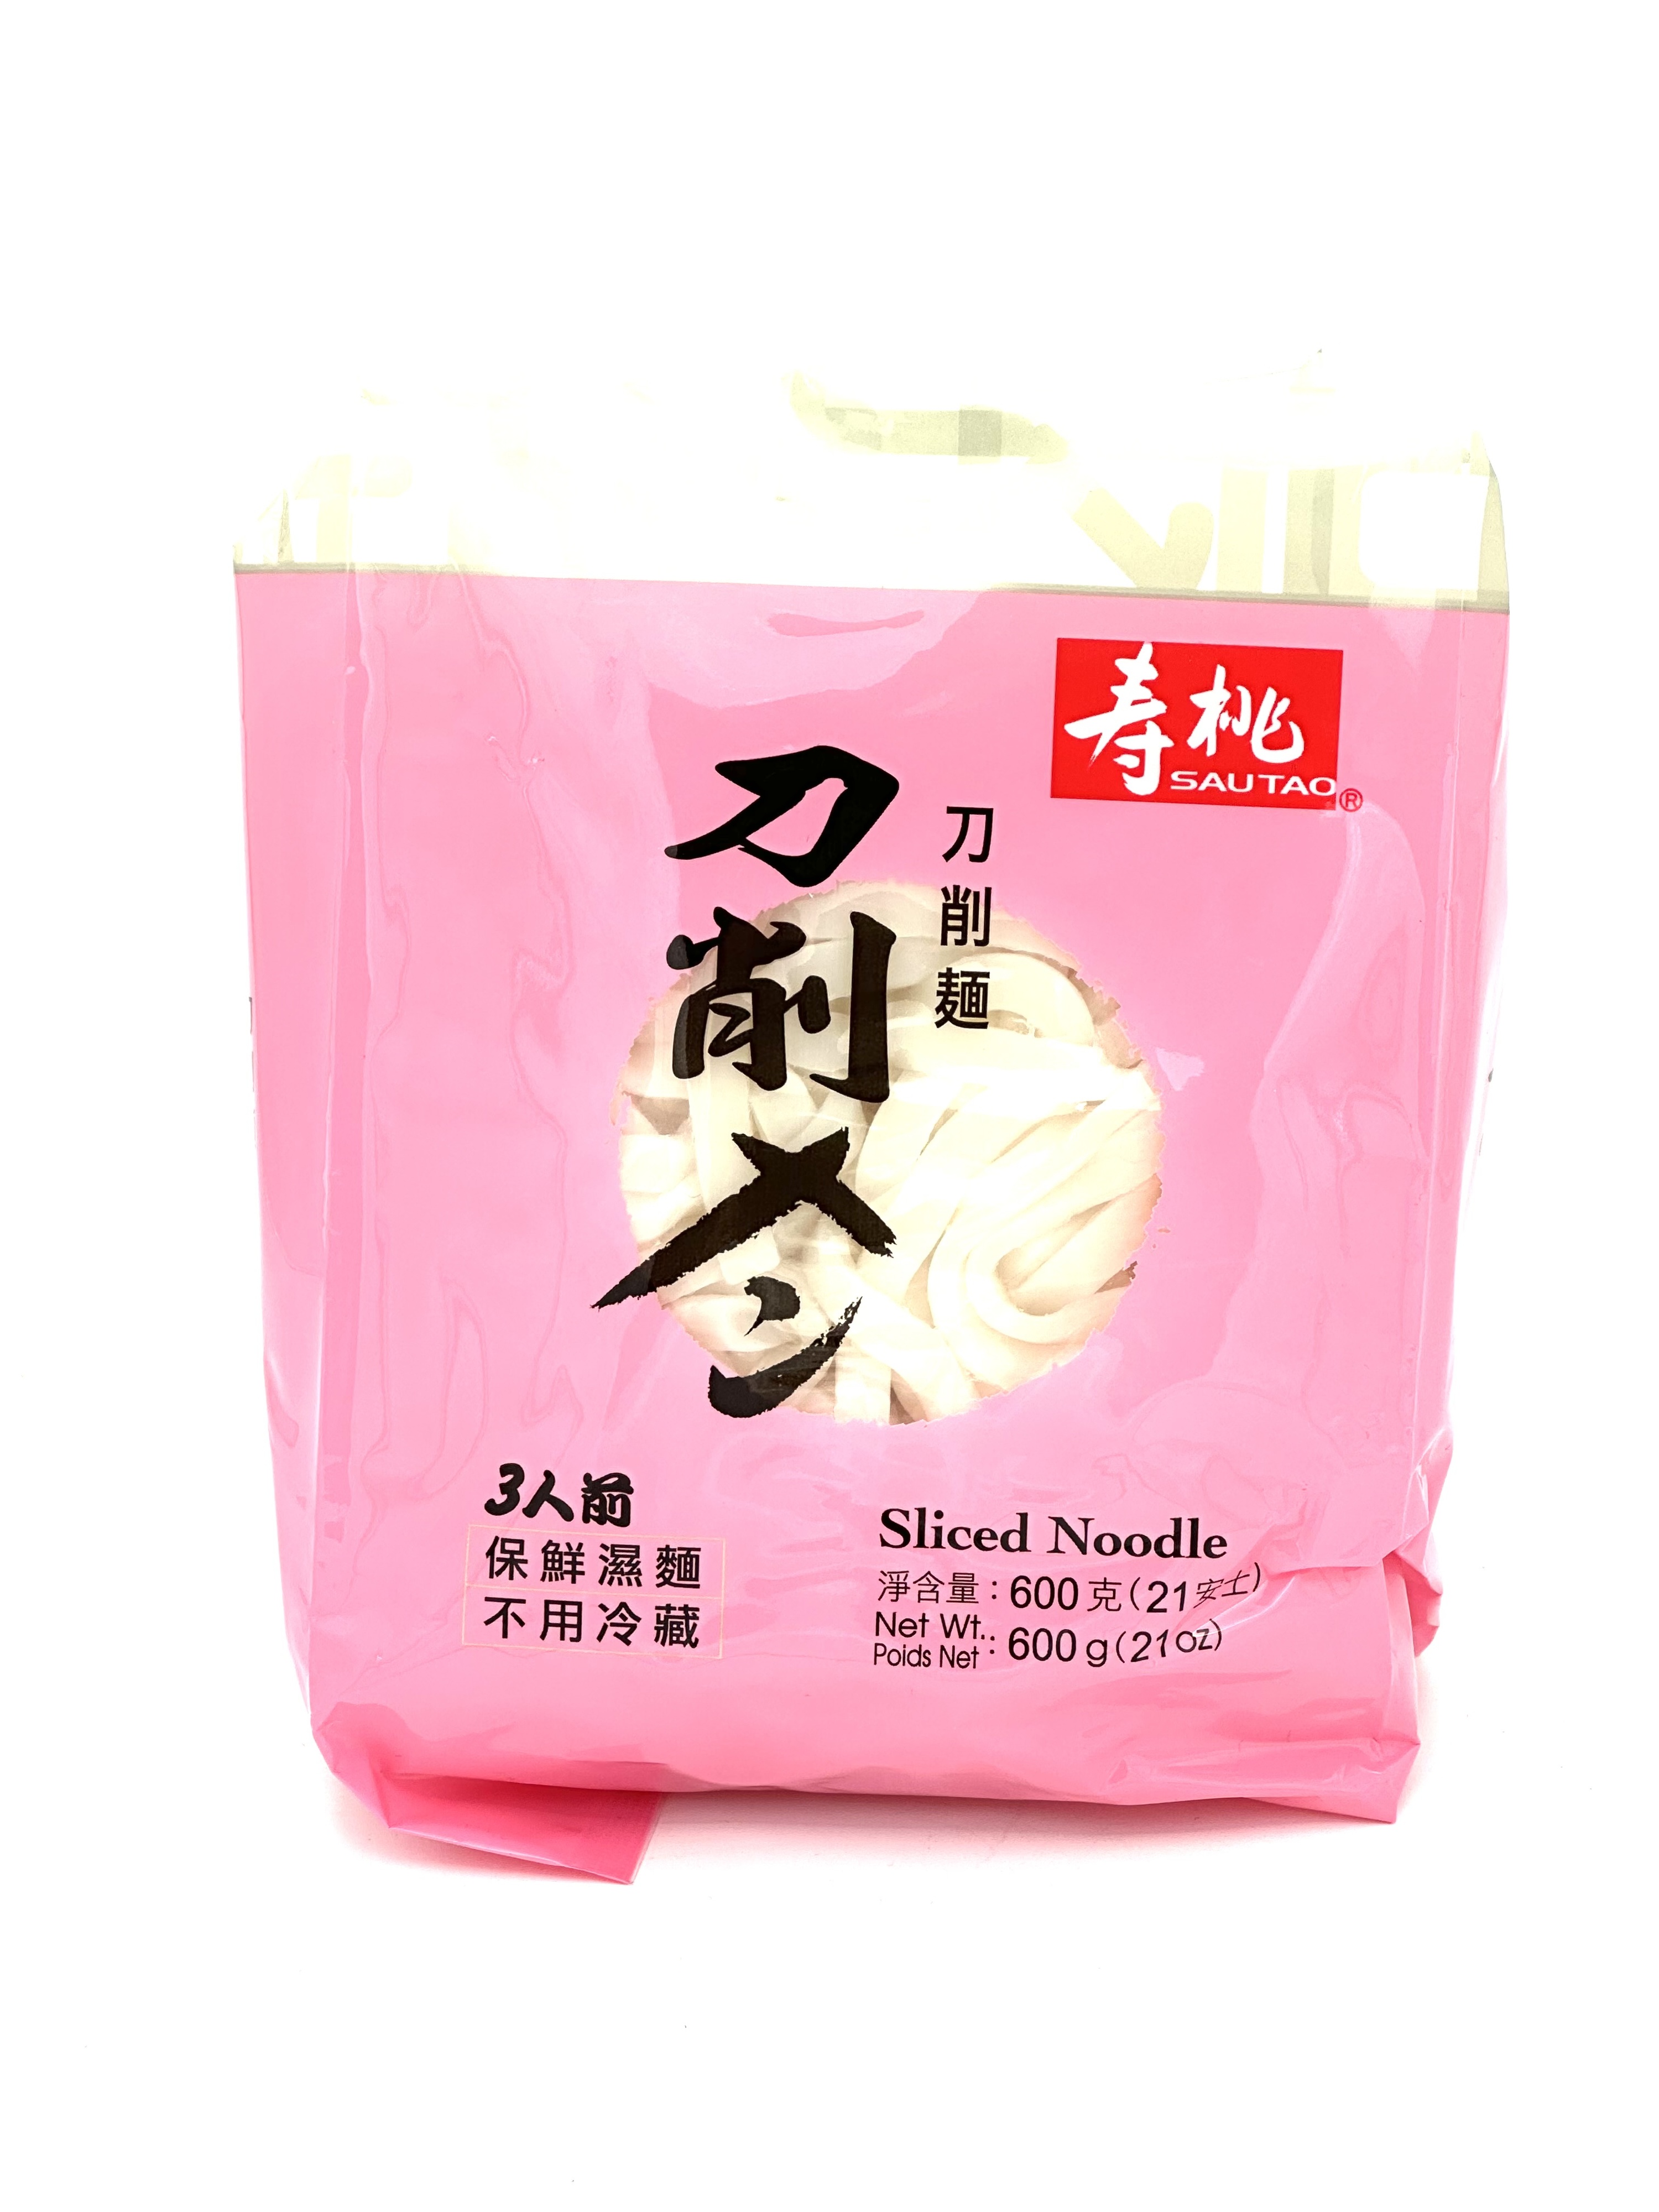 SAU TAO Sliced Noodle 600 g 寿桃刀切面